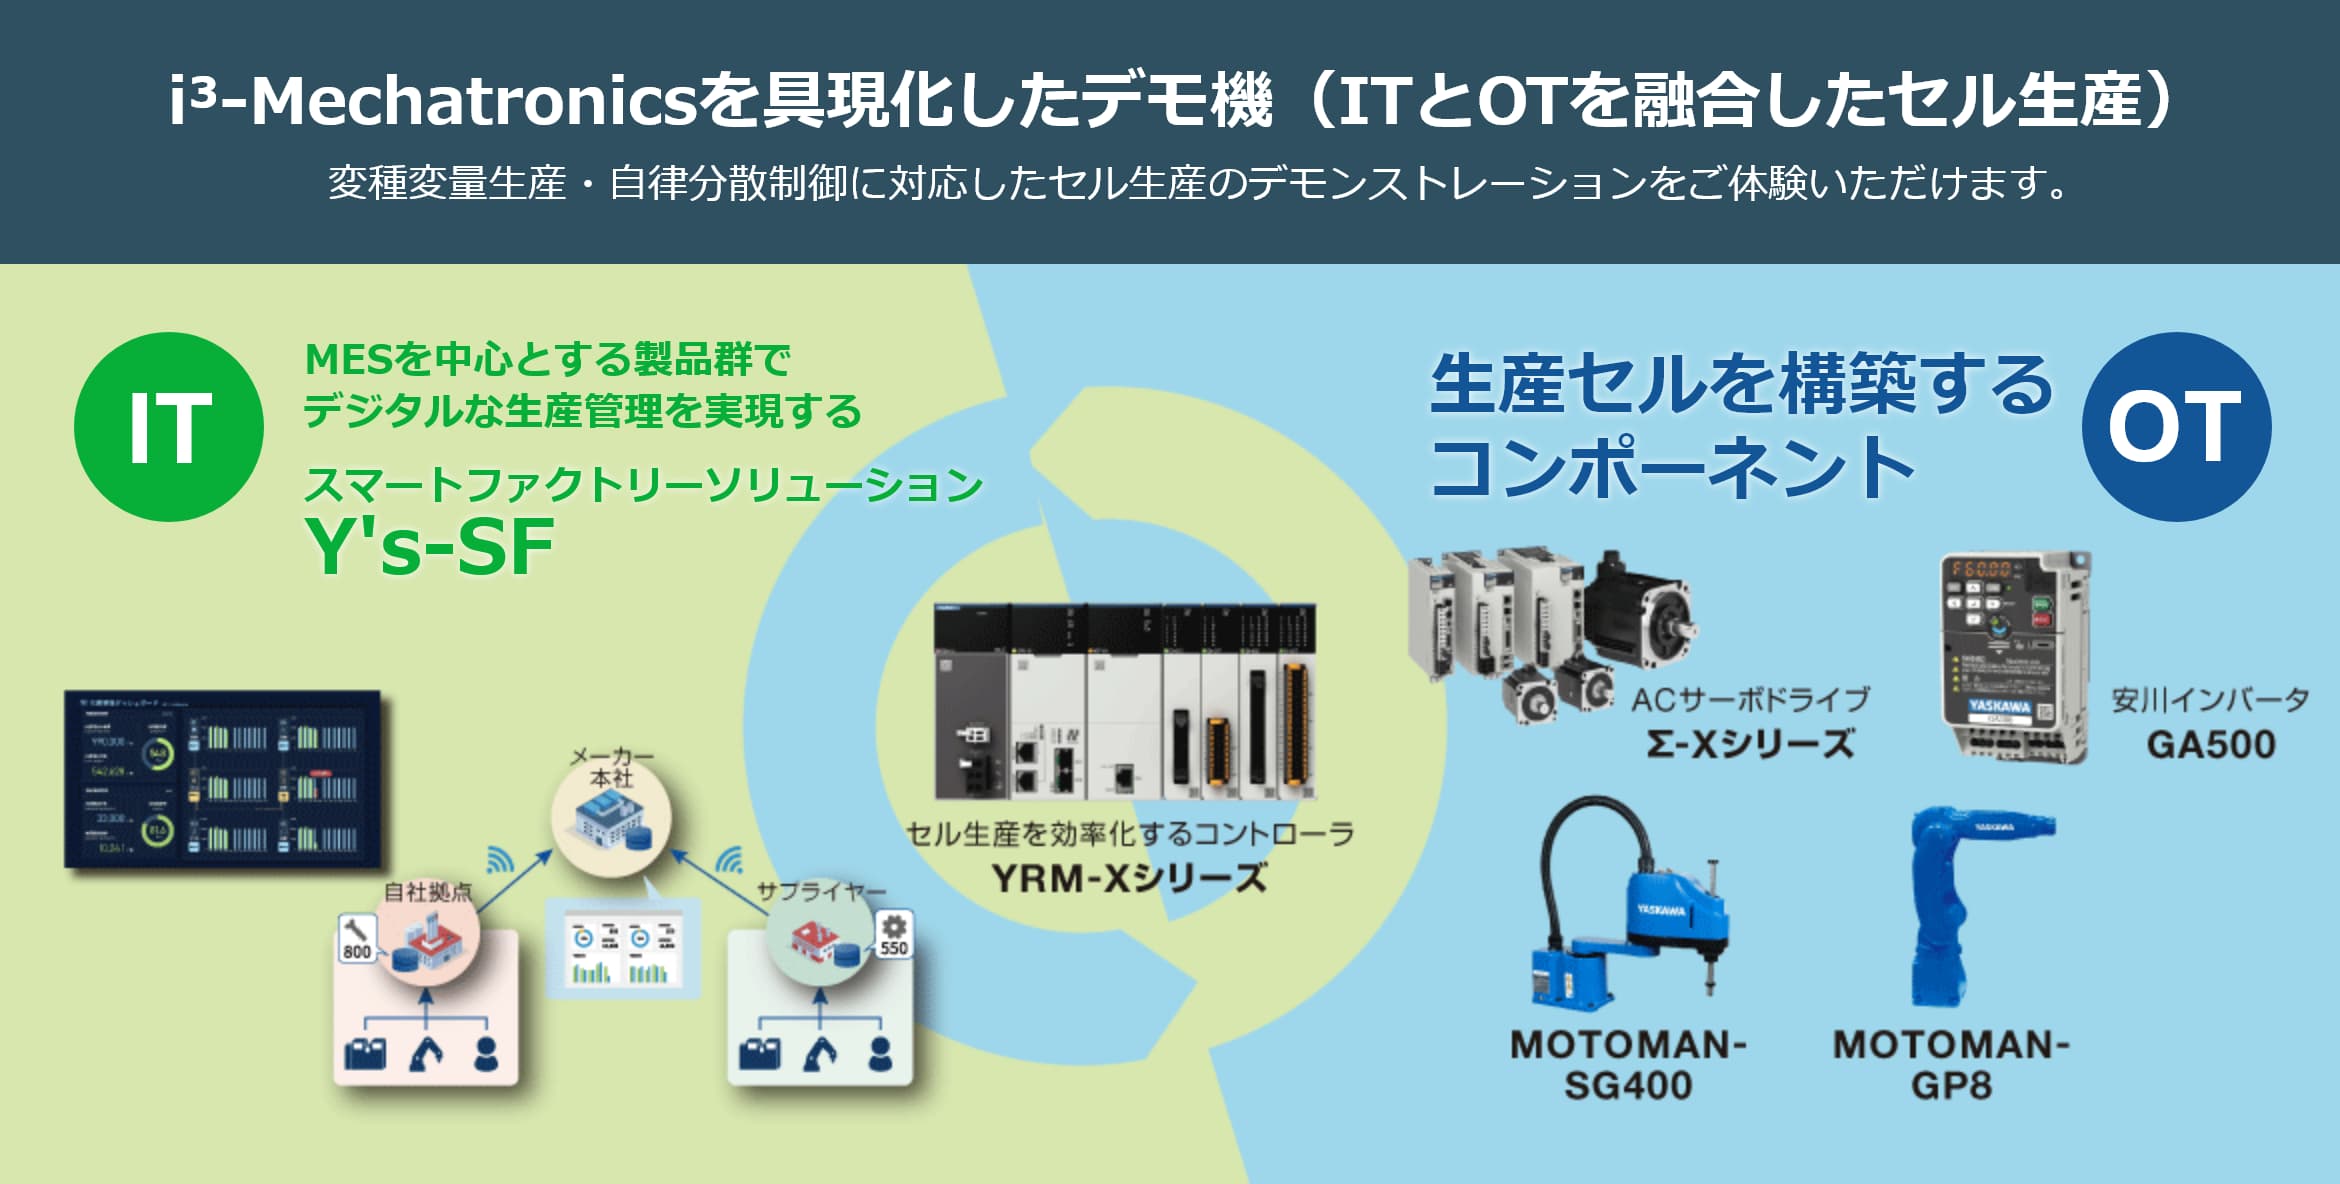 i³-Mechatronicsを具現化したデモ機（ITとOTを融合したセル生産）